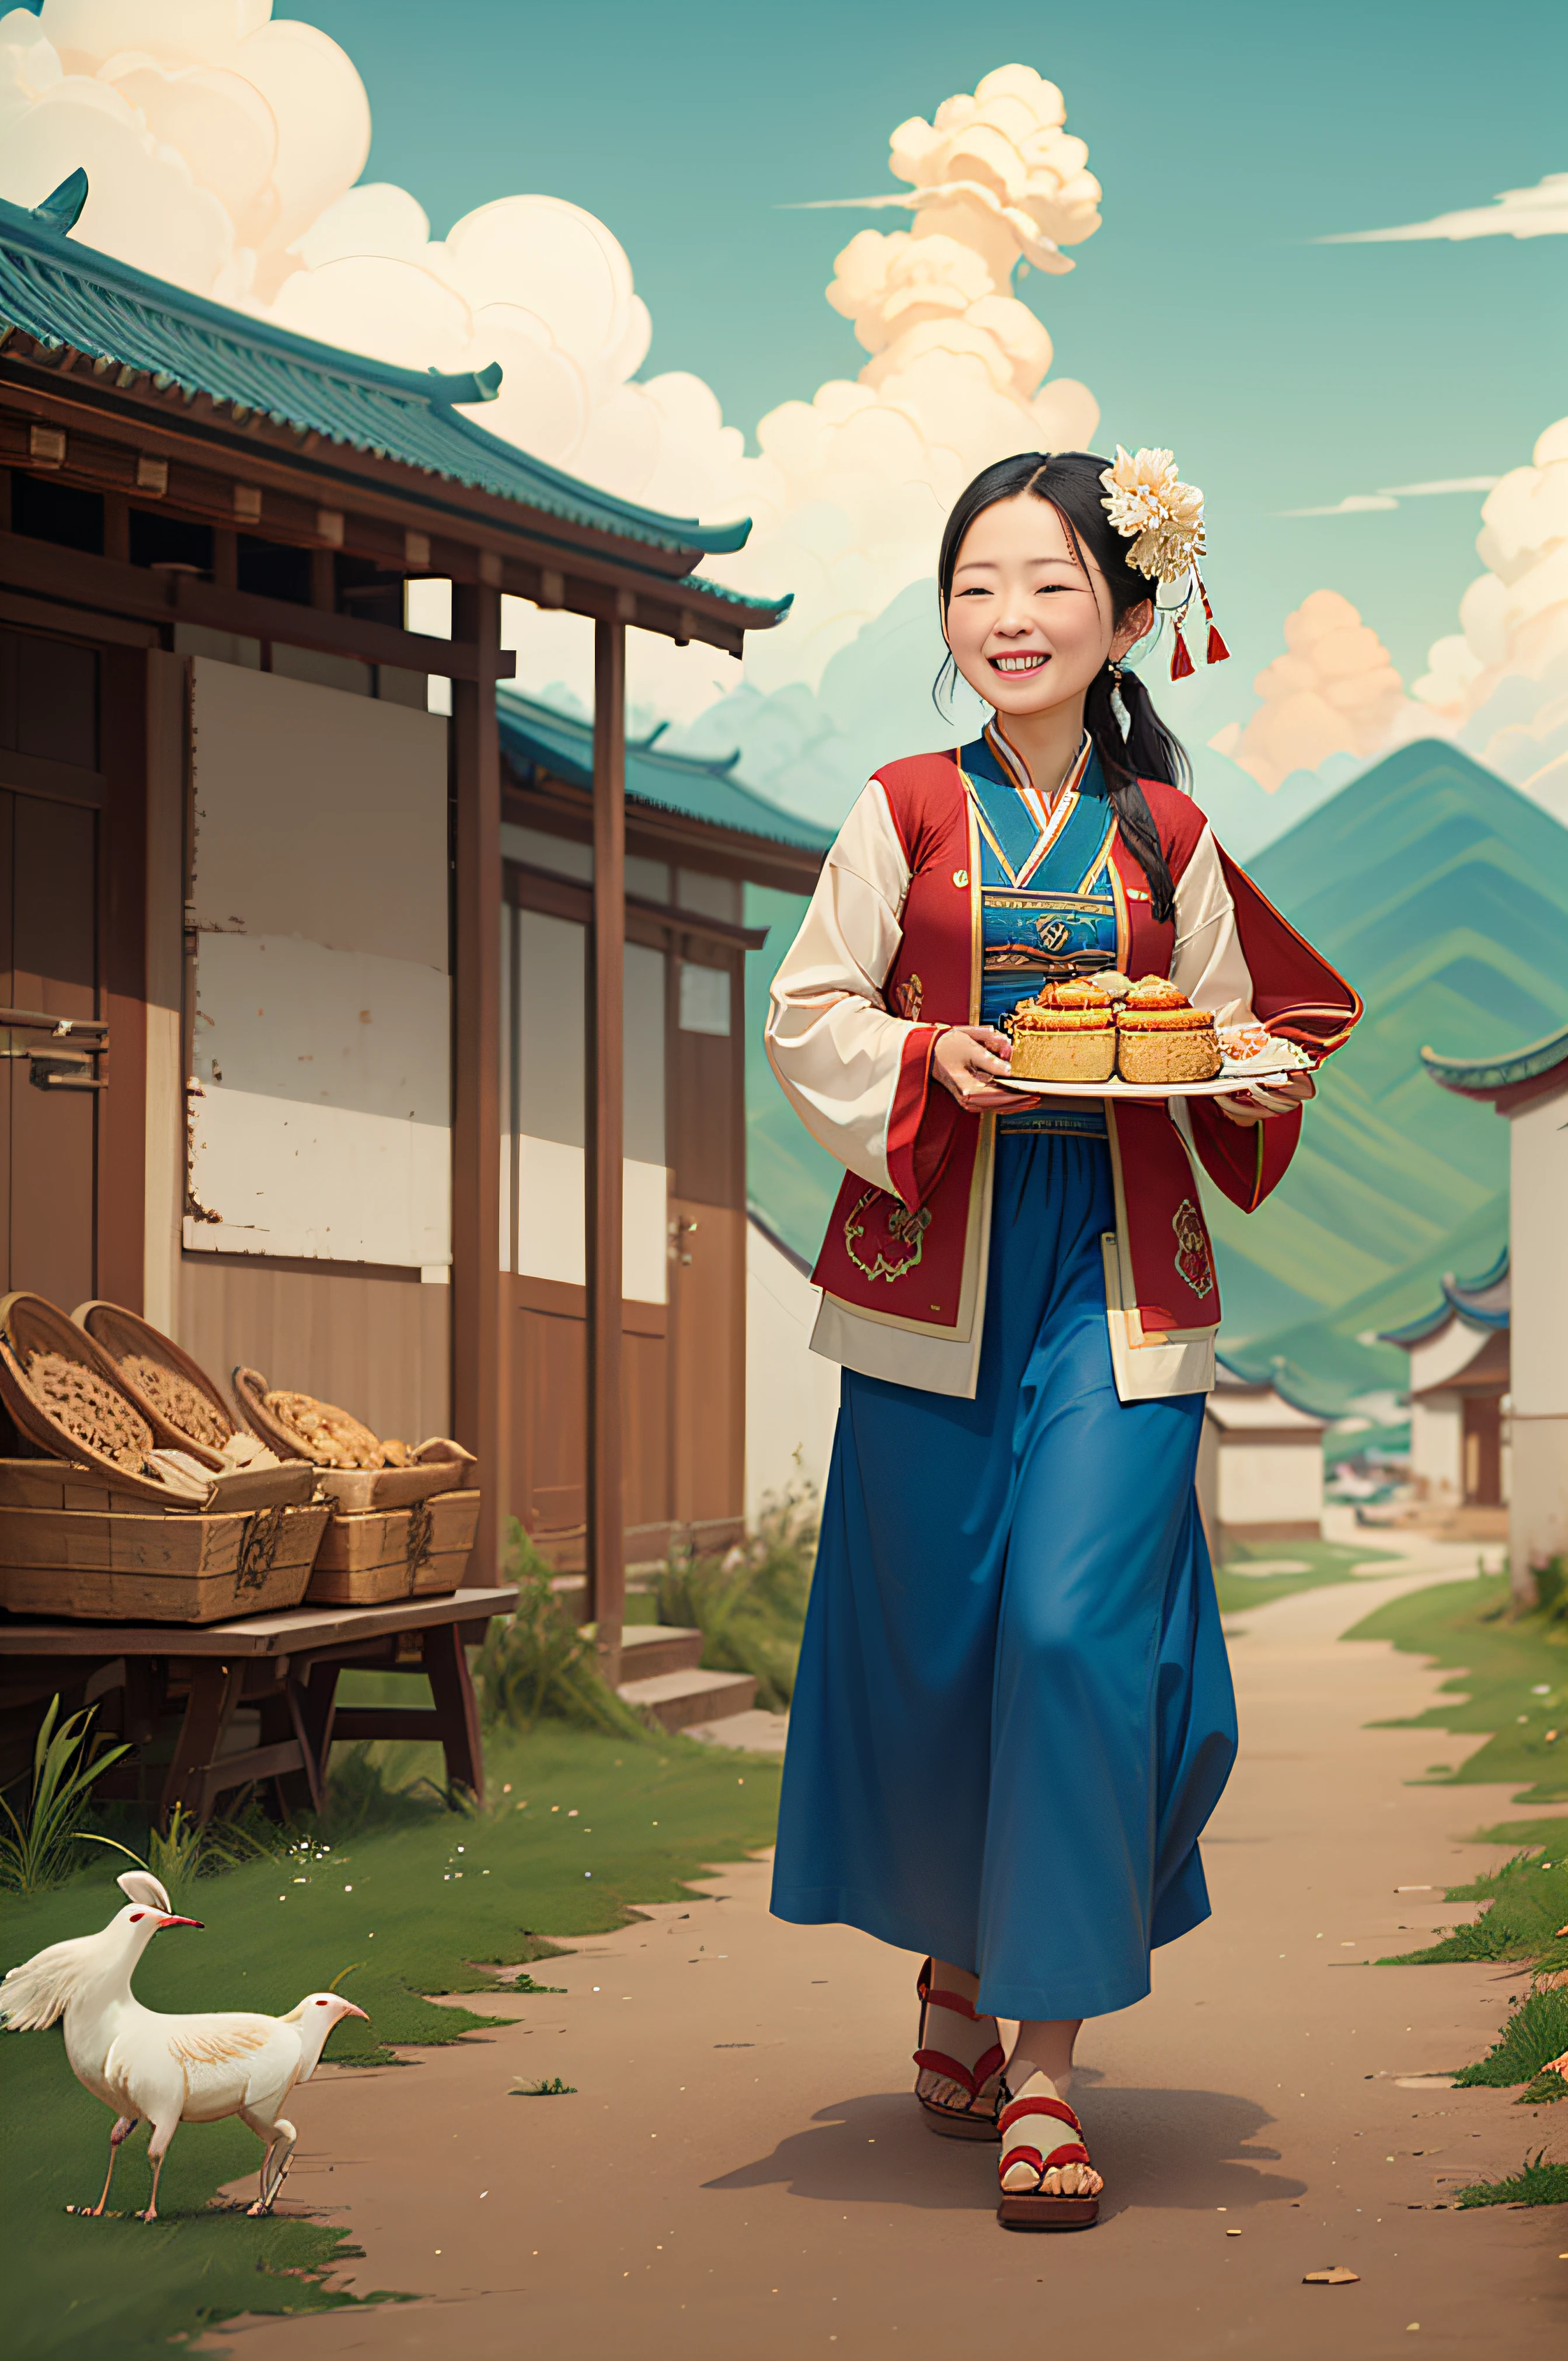 Uma garota mongol carrega alegremente um prato de iguarias，Campo de grama，rebanho，com céu azul e nuvens brancas，Estilo Guochao